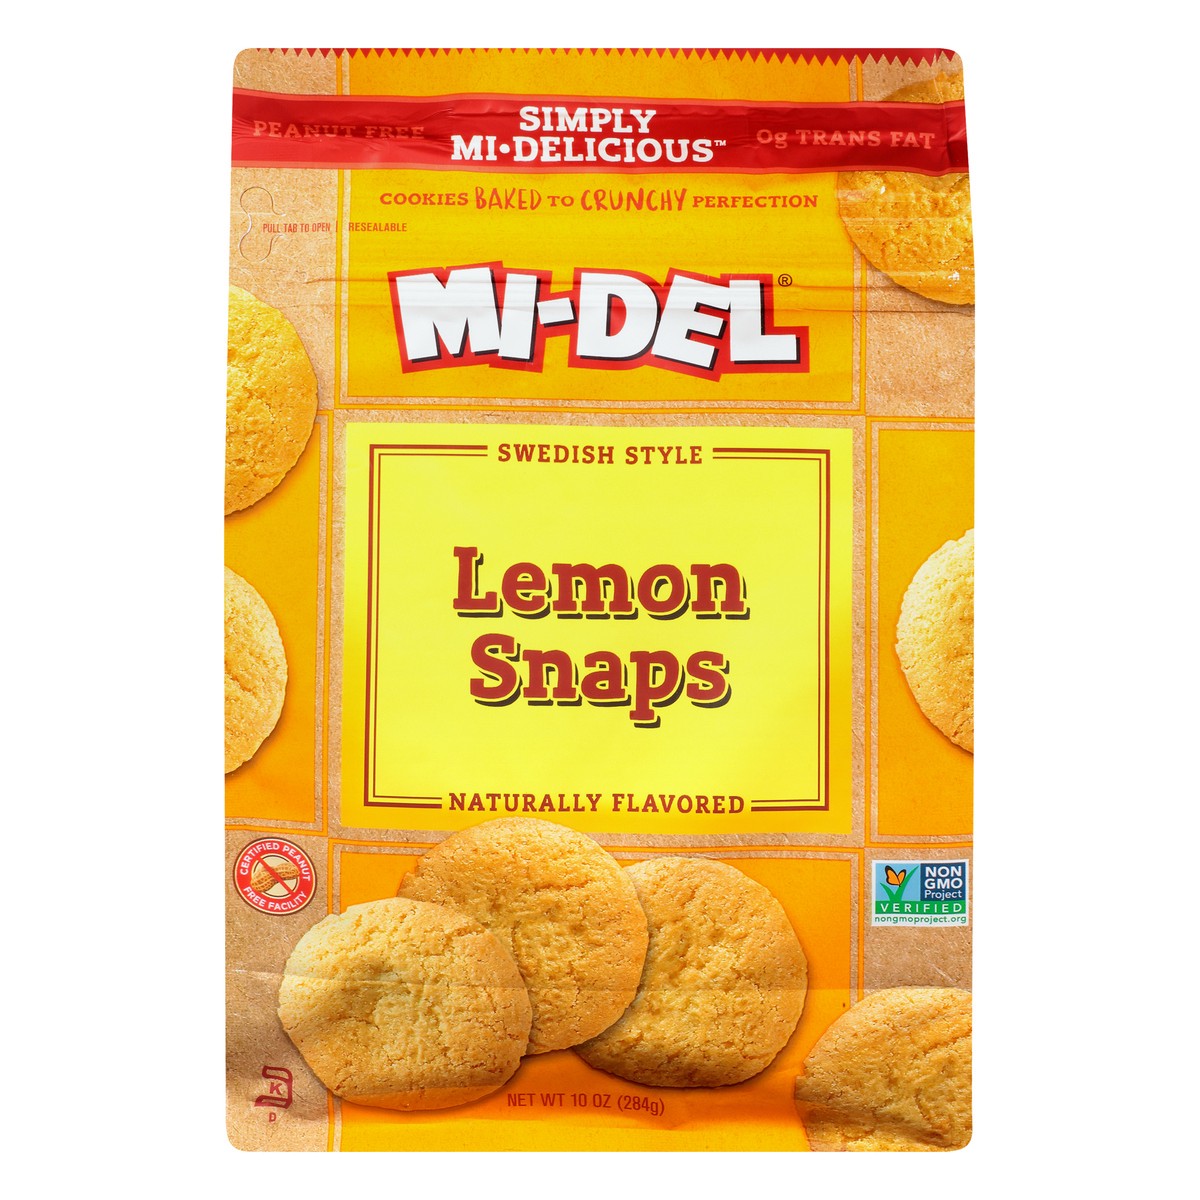 slide 1 of 9, MI-Del Midel Lemon Snaps Cookies, 10 oz